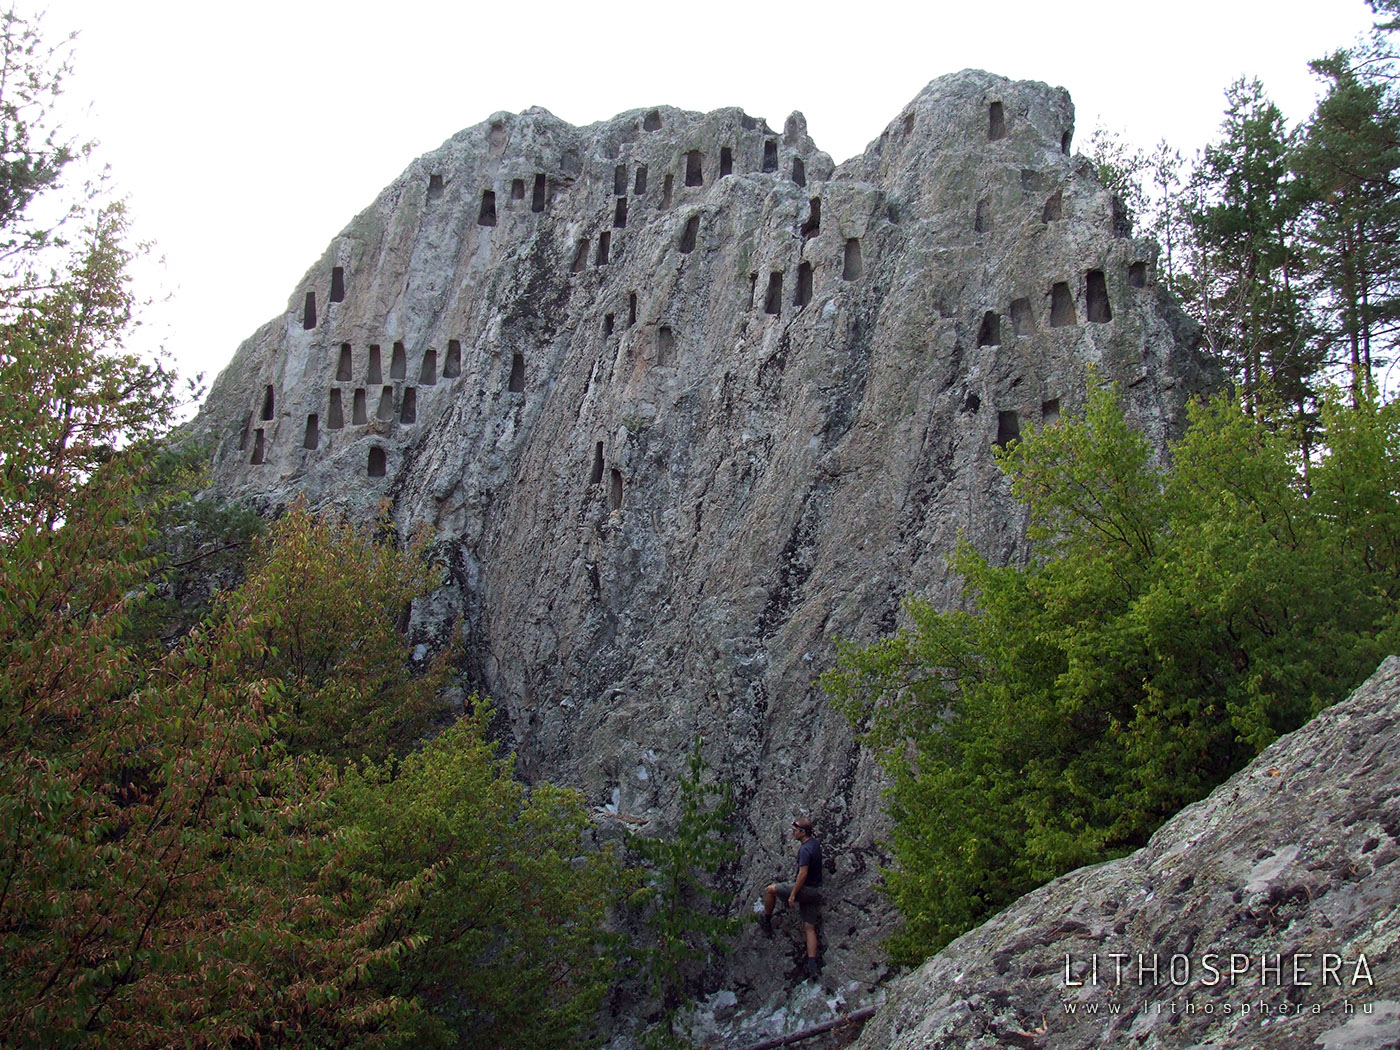 Sas-kő. A Katal kaya, azaz Orlovi skali a Keleti-Rodope egyik legtöbb fülkével rendelkező kultikus sziklája (Ardino, Bulgária). Az Arda vízgyűjtő területe bővelkedik ilyen megfaragott sziklákban, melyek a bronzkor végén, a vaskor elején kialakult kőkultúra sajátos elemei 